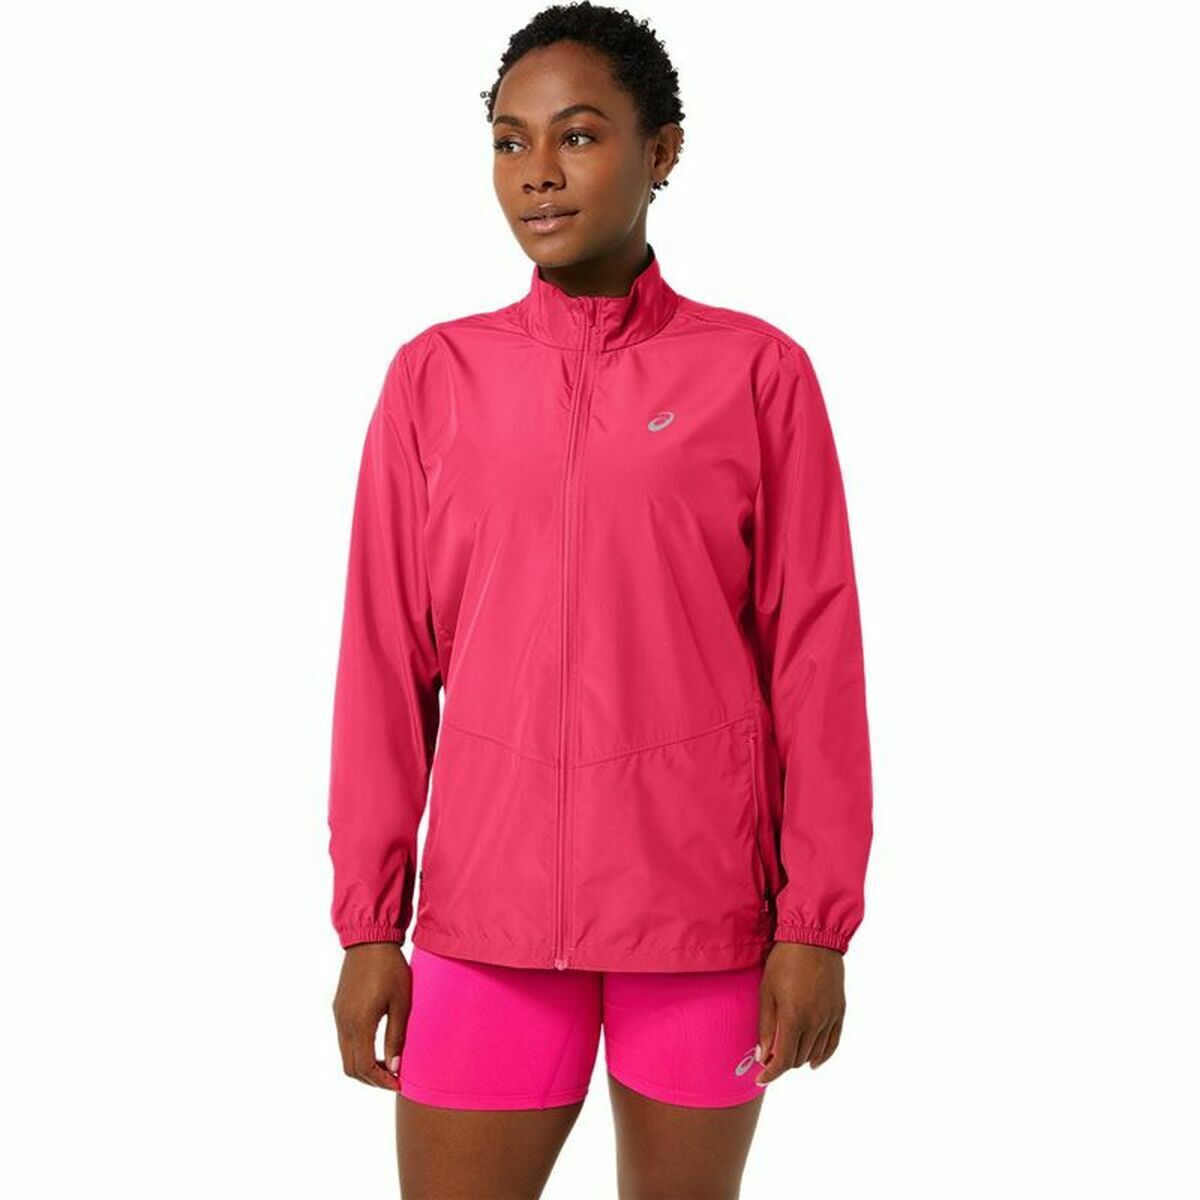 Women's Rainproof Jacket Asics Core Fuchsia